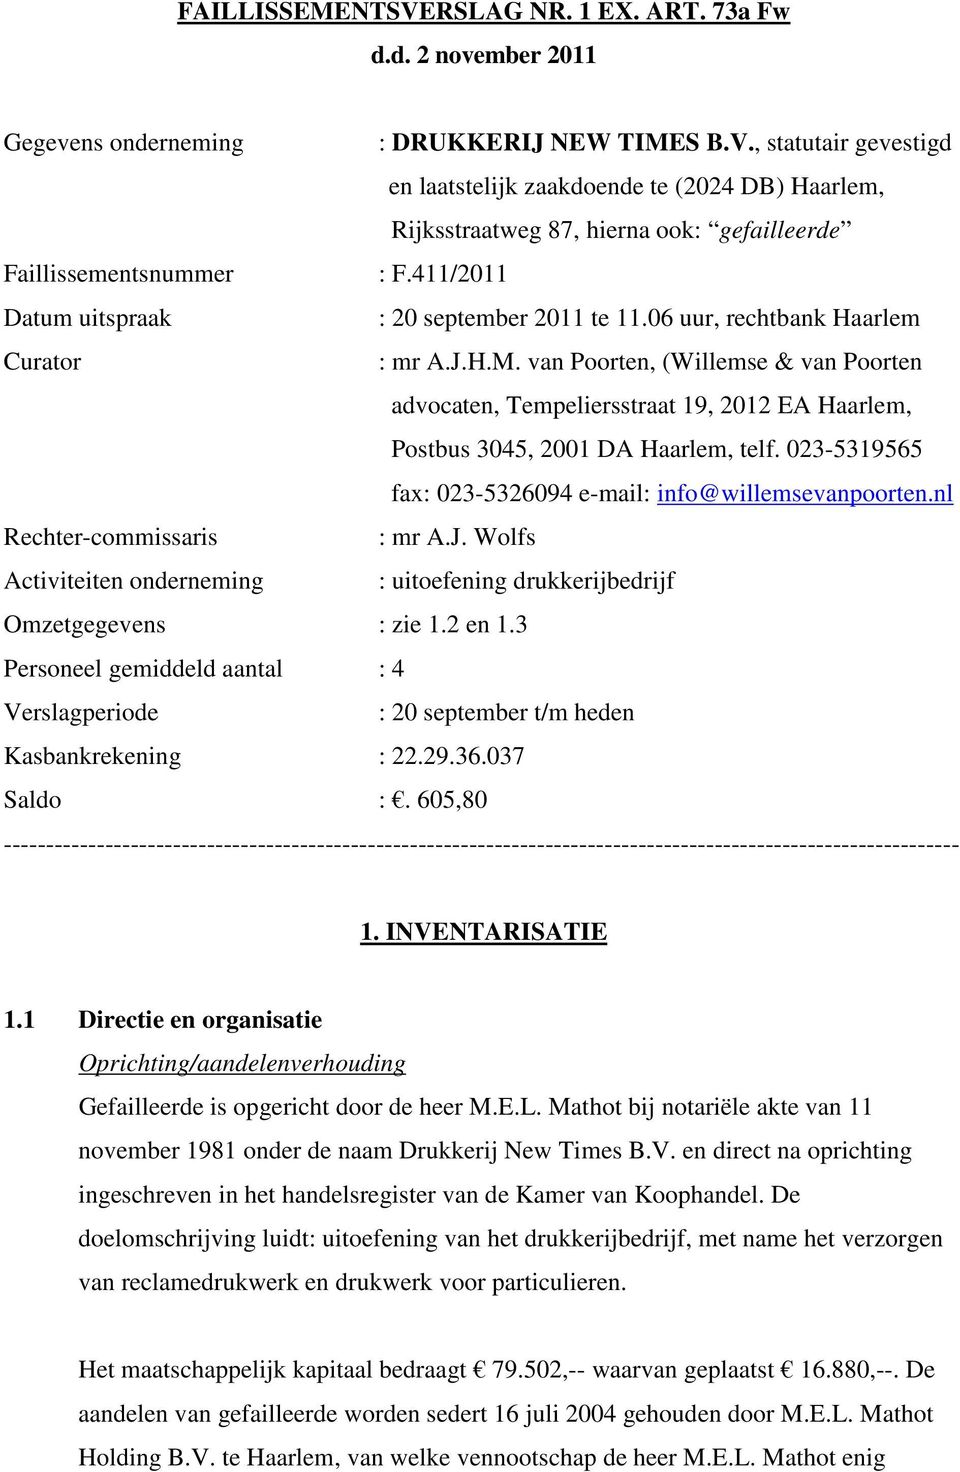 van Poorten, (Willemse & van Poorten advocaten, Tempeliersstraat 19, 2012 EA Haarlem, Postbus 3045, 2001 DA Haarlem, telf. 023-5319565 fax: 023-5326094 e-mail: info@willemsevanpoorten.